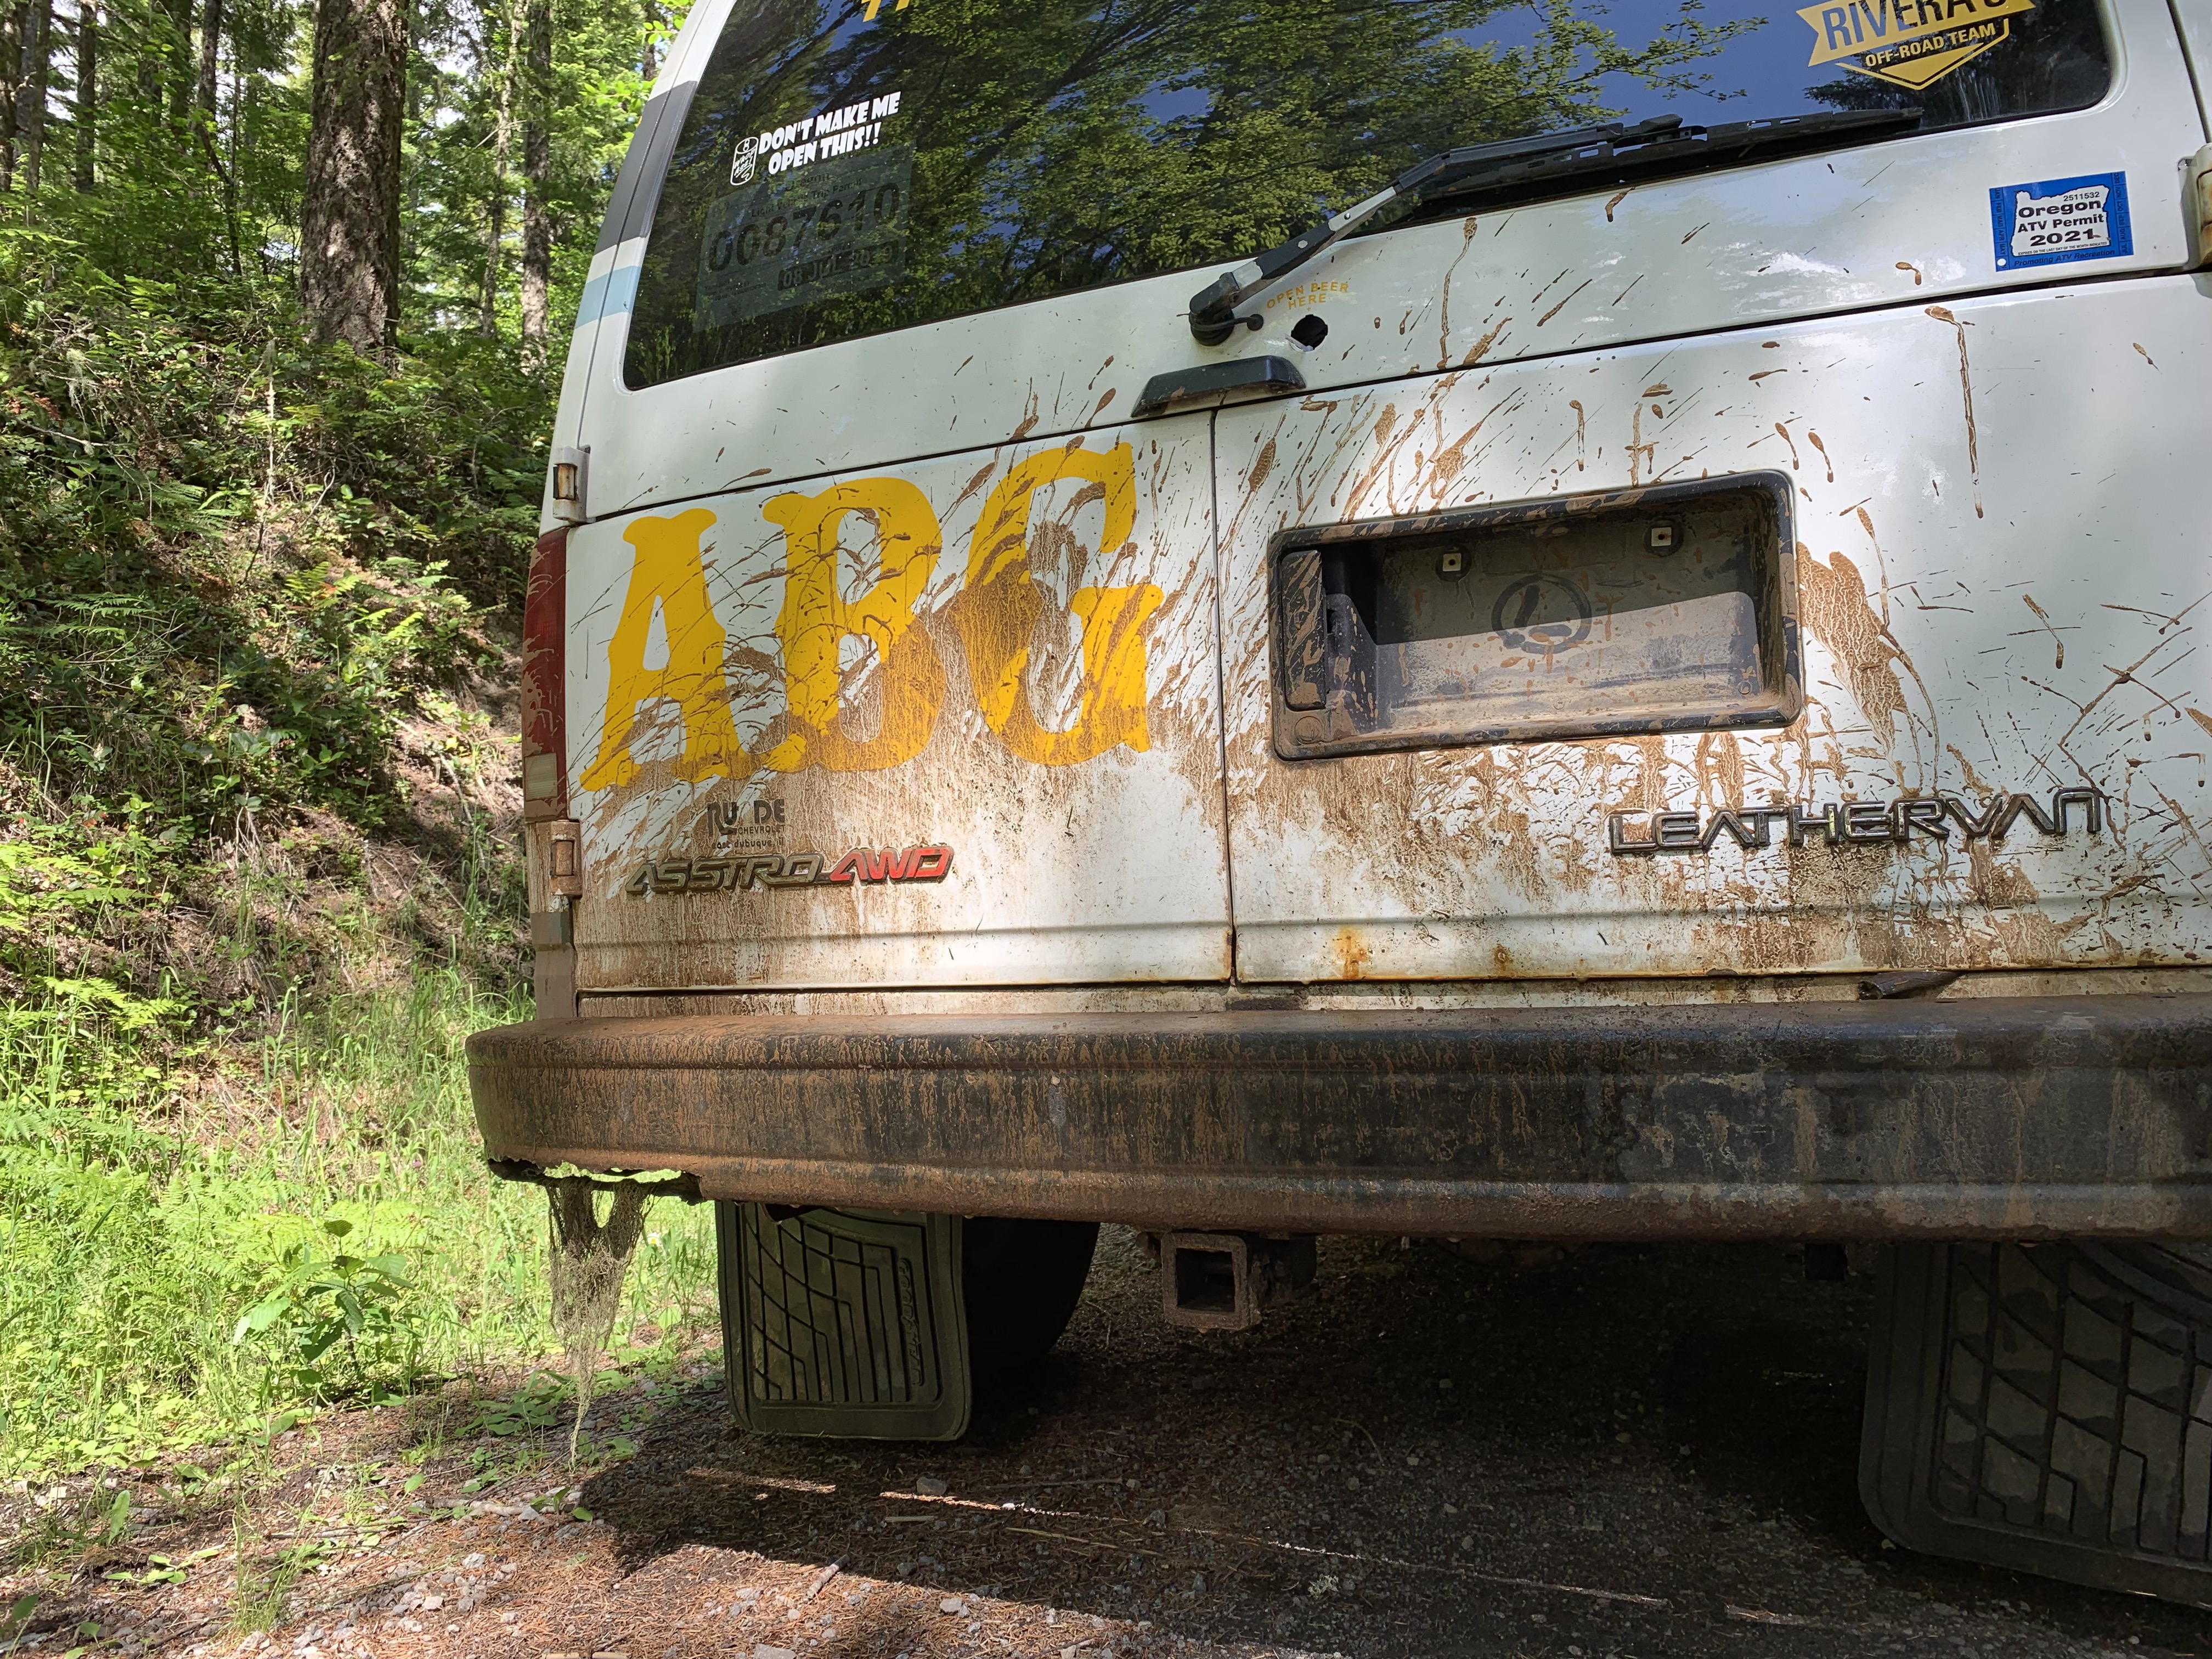 The Leatherman van covered in mud.